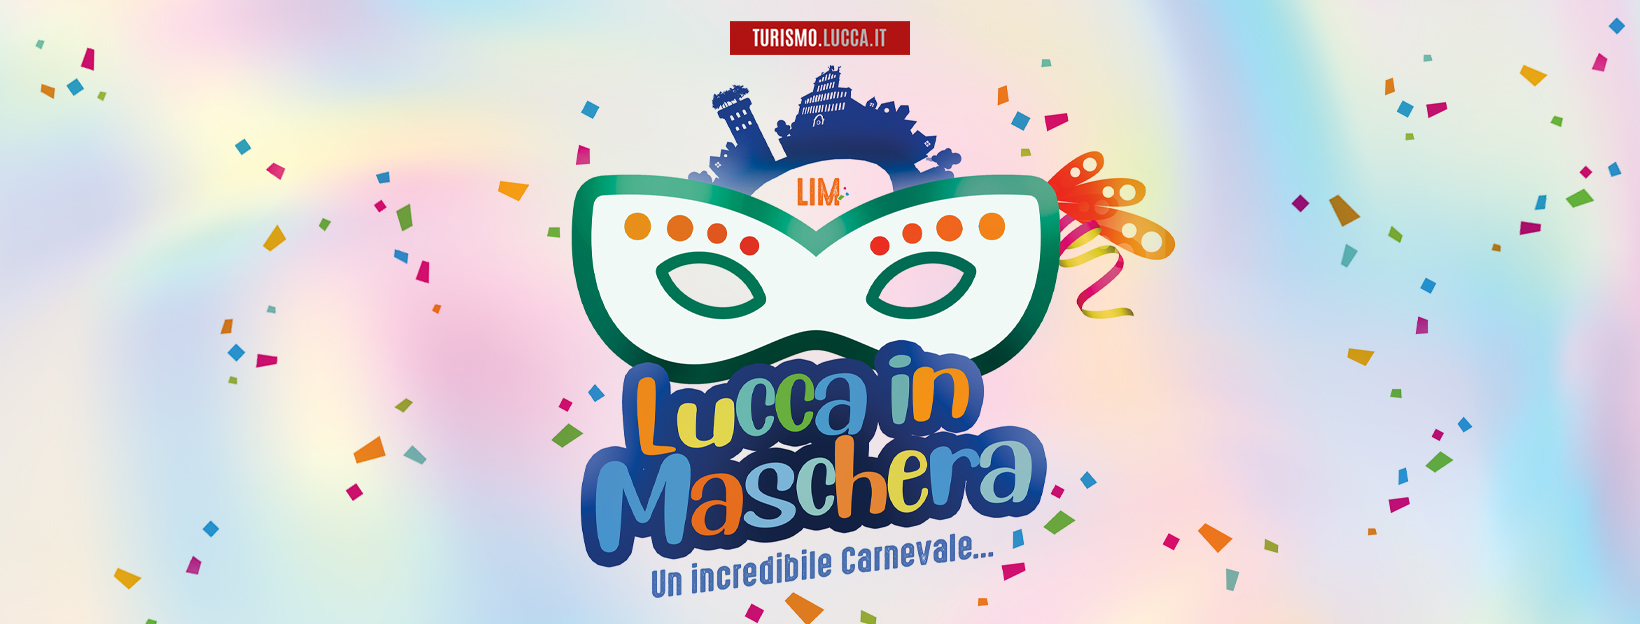 Logo Lucca in maschera